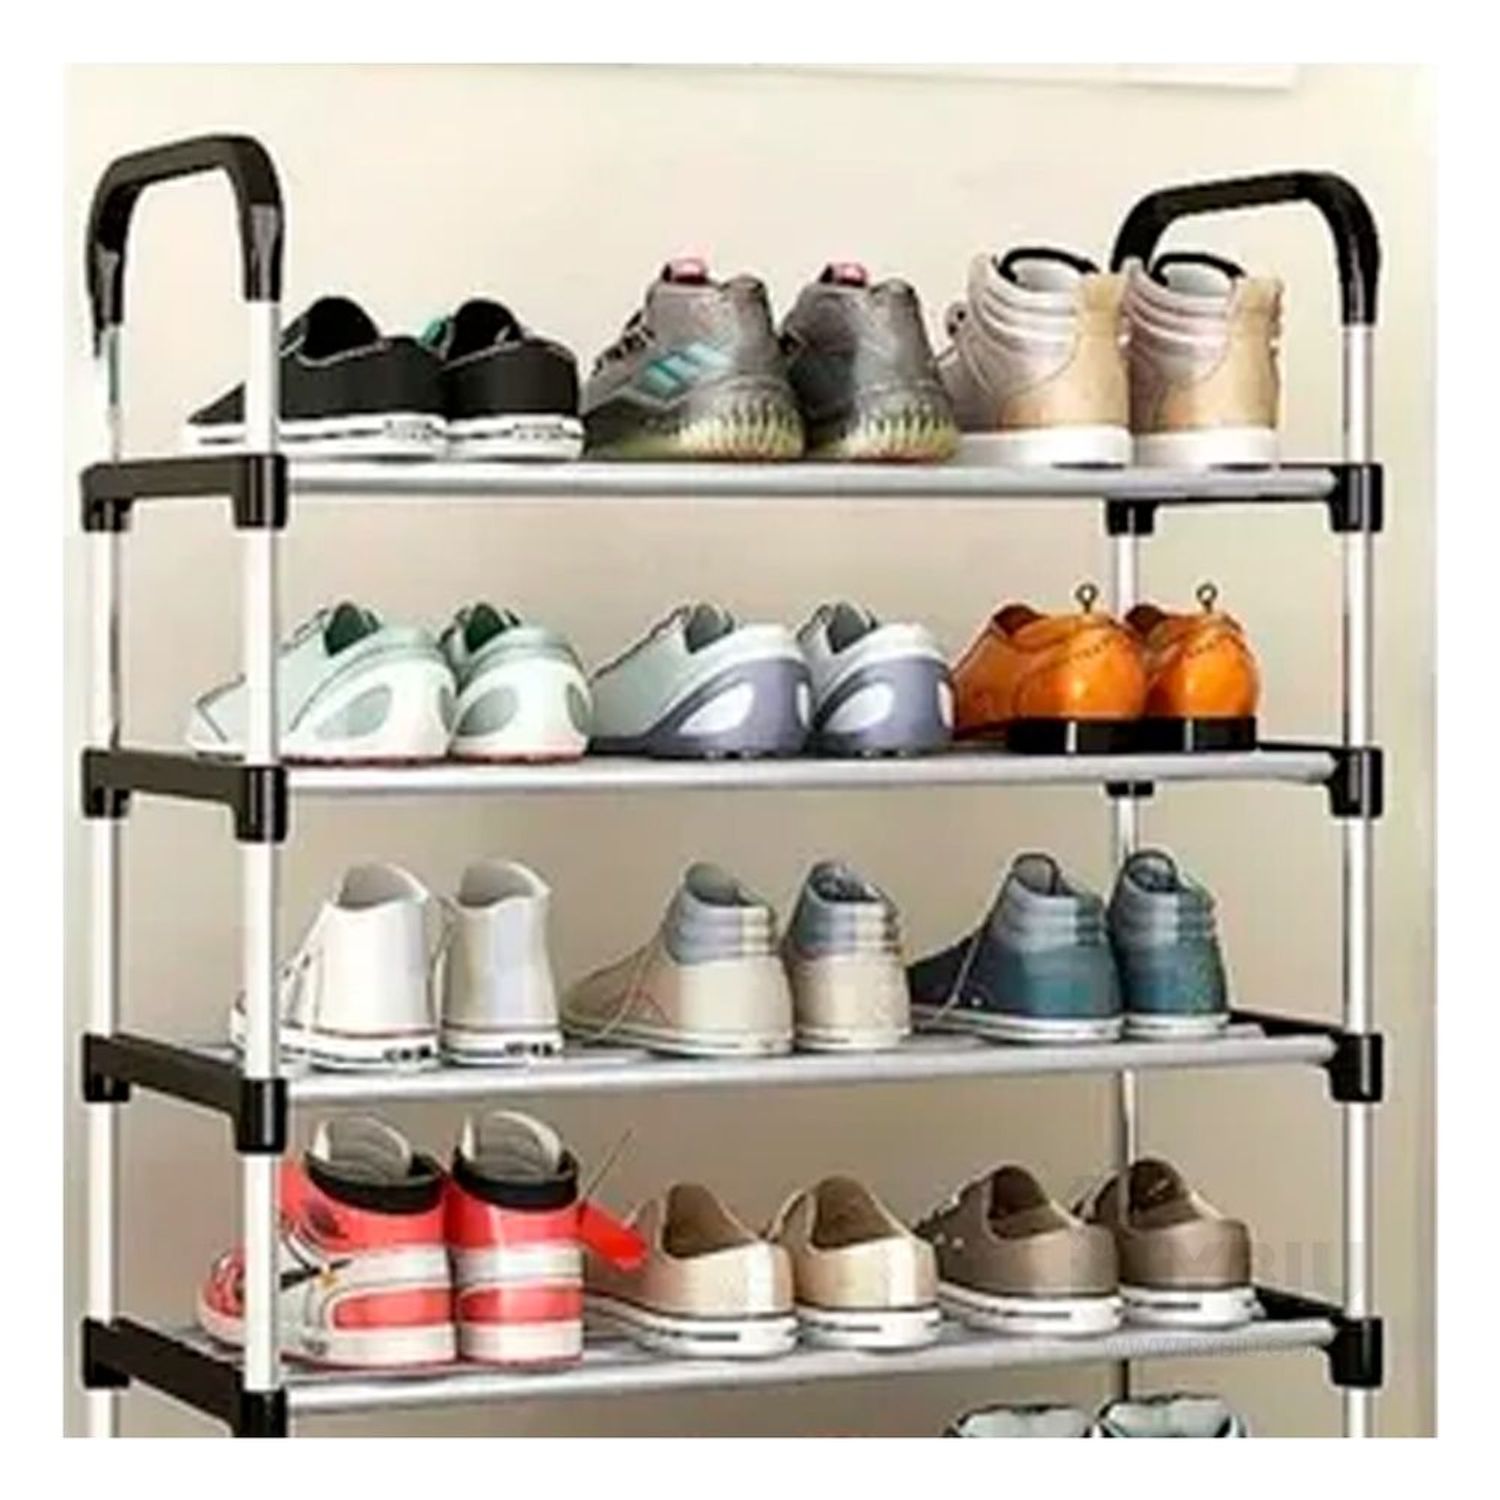 Shoe organizer homemade - Organizador de zapatos hecho en casa 